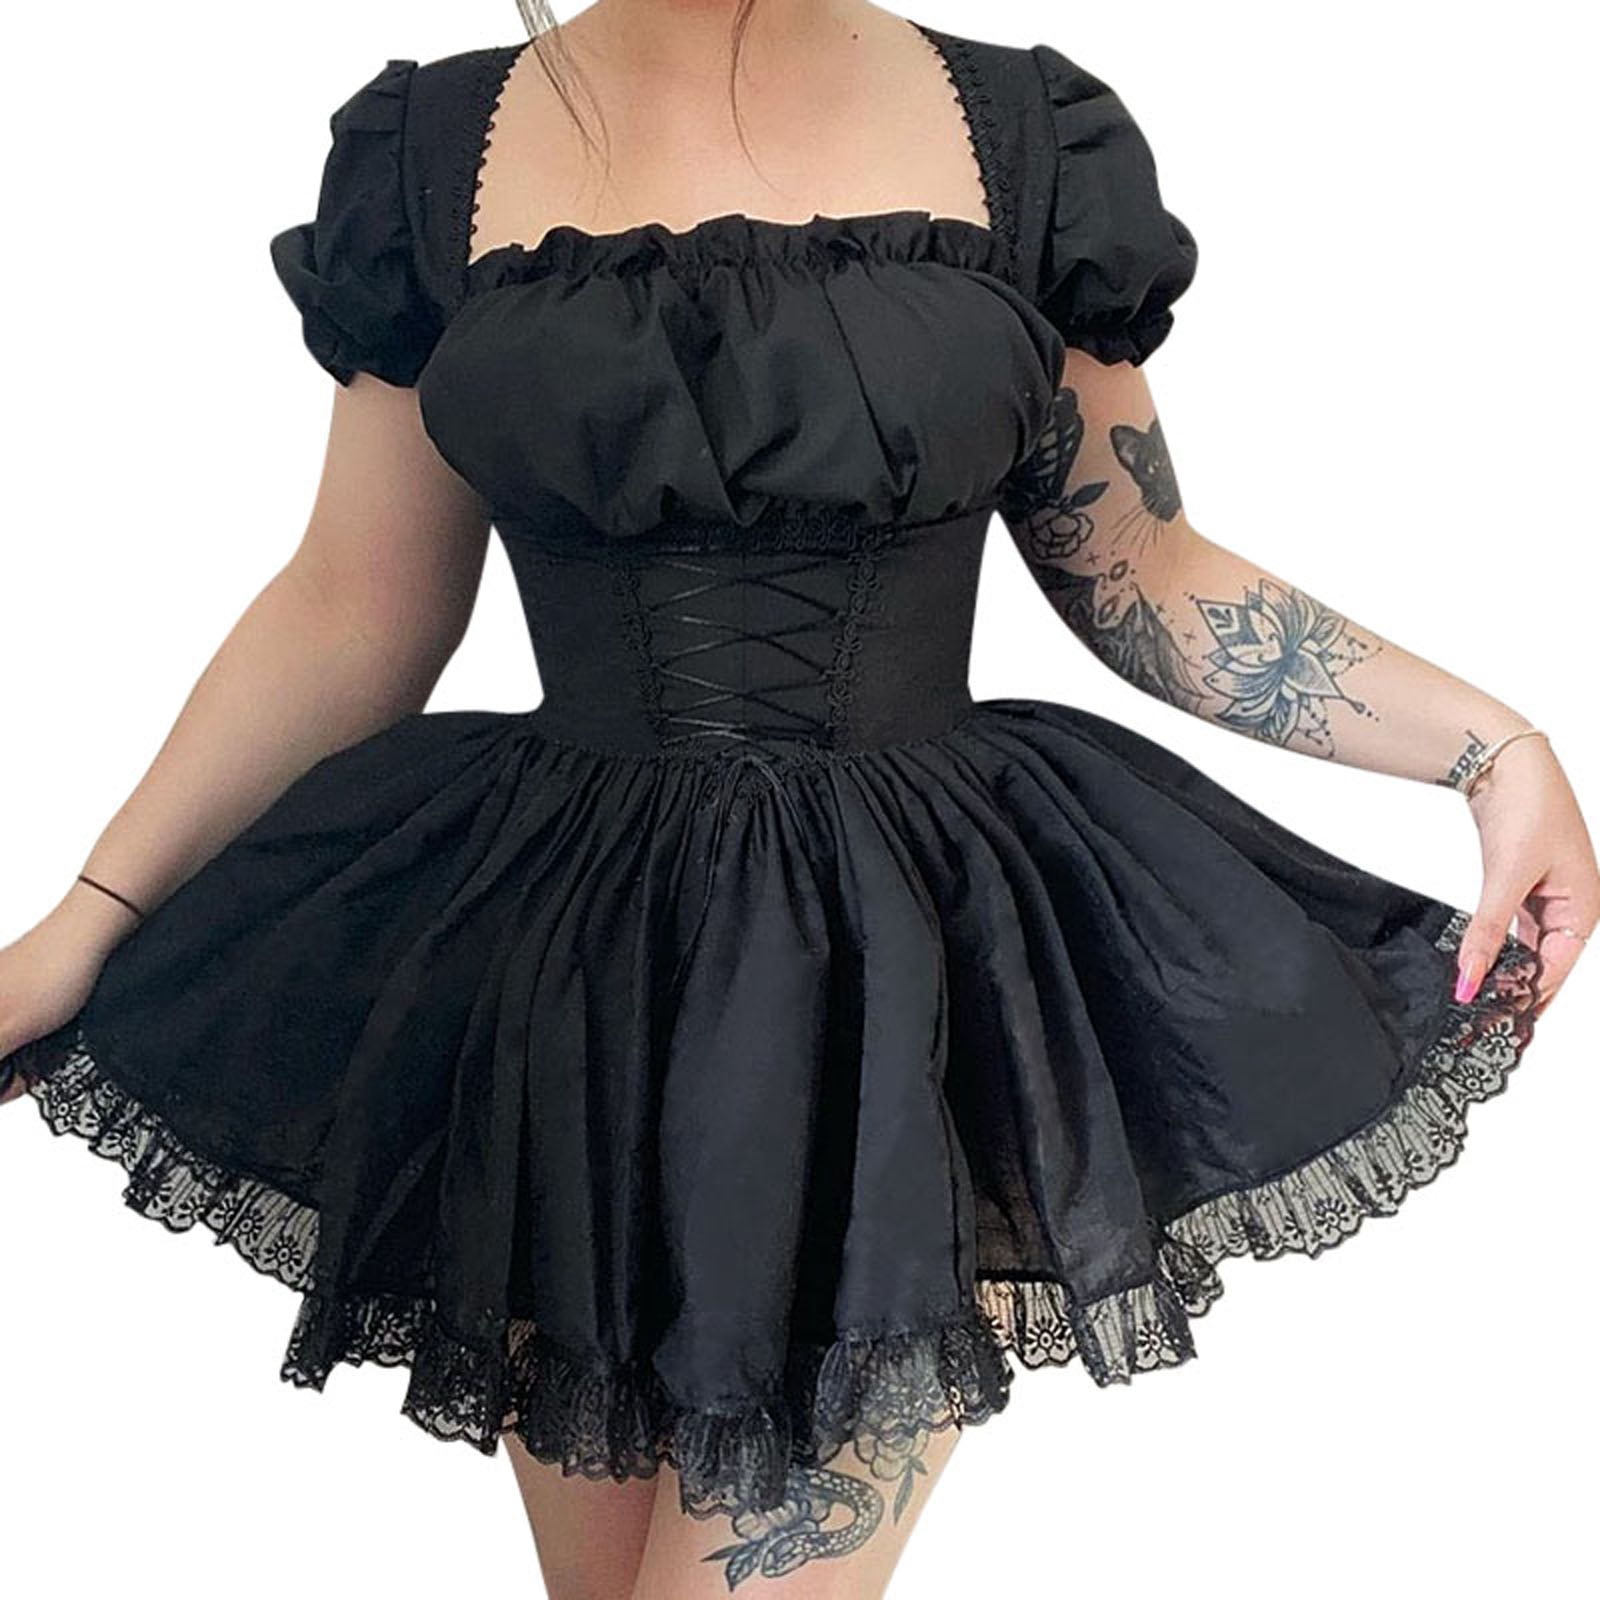 Musuos Women Gothic Lolita Dresses Black Vintage Grunge